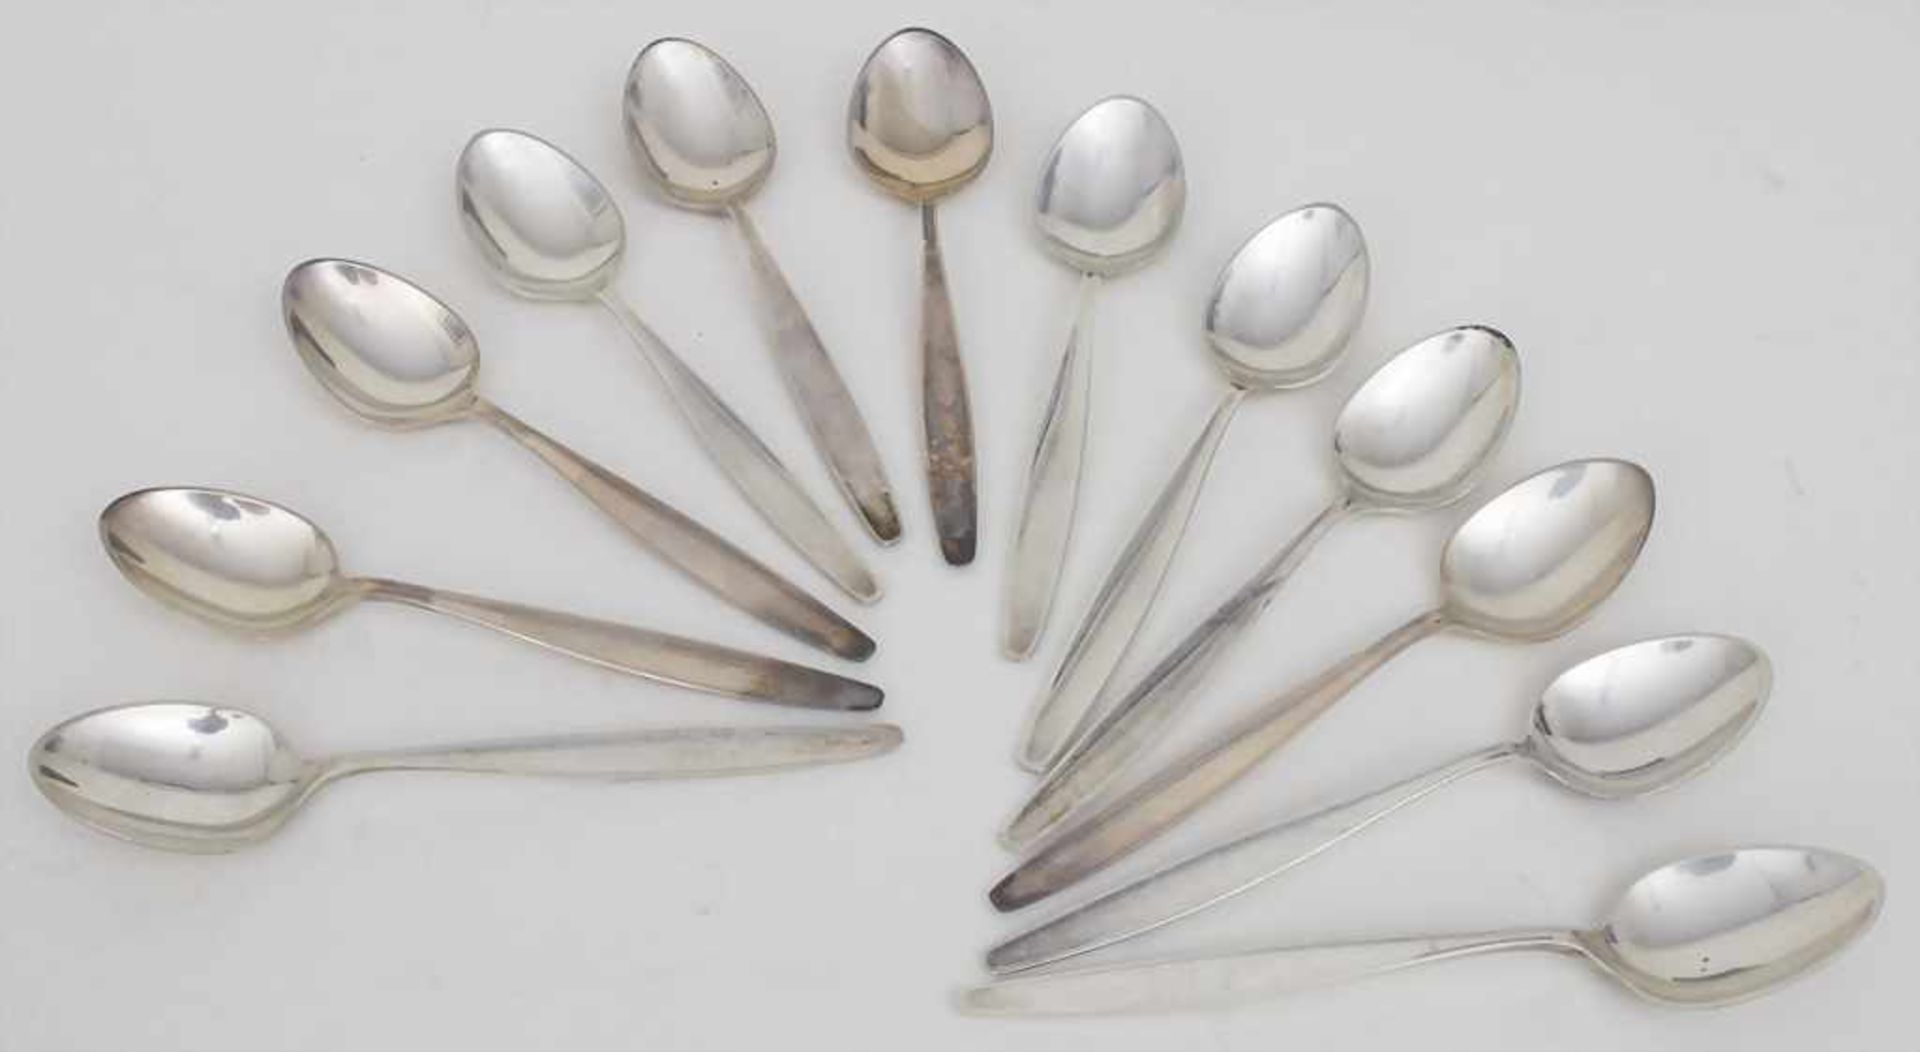 12 Kaffeelöffel 'Cypress' / 12 sterling silver spoons 'Cypres', Tias Eckhoff, Georg Jensen,